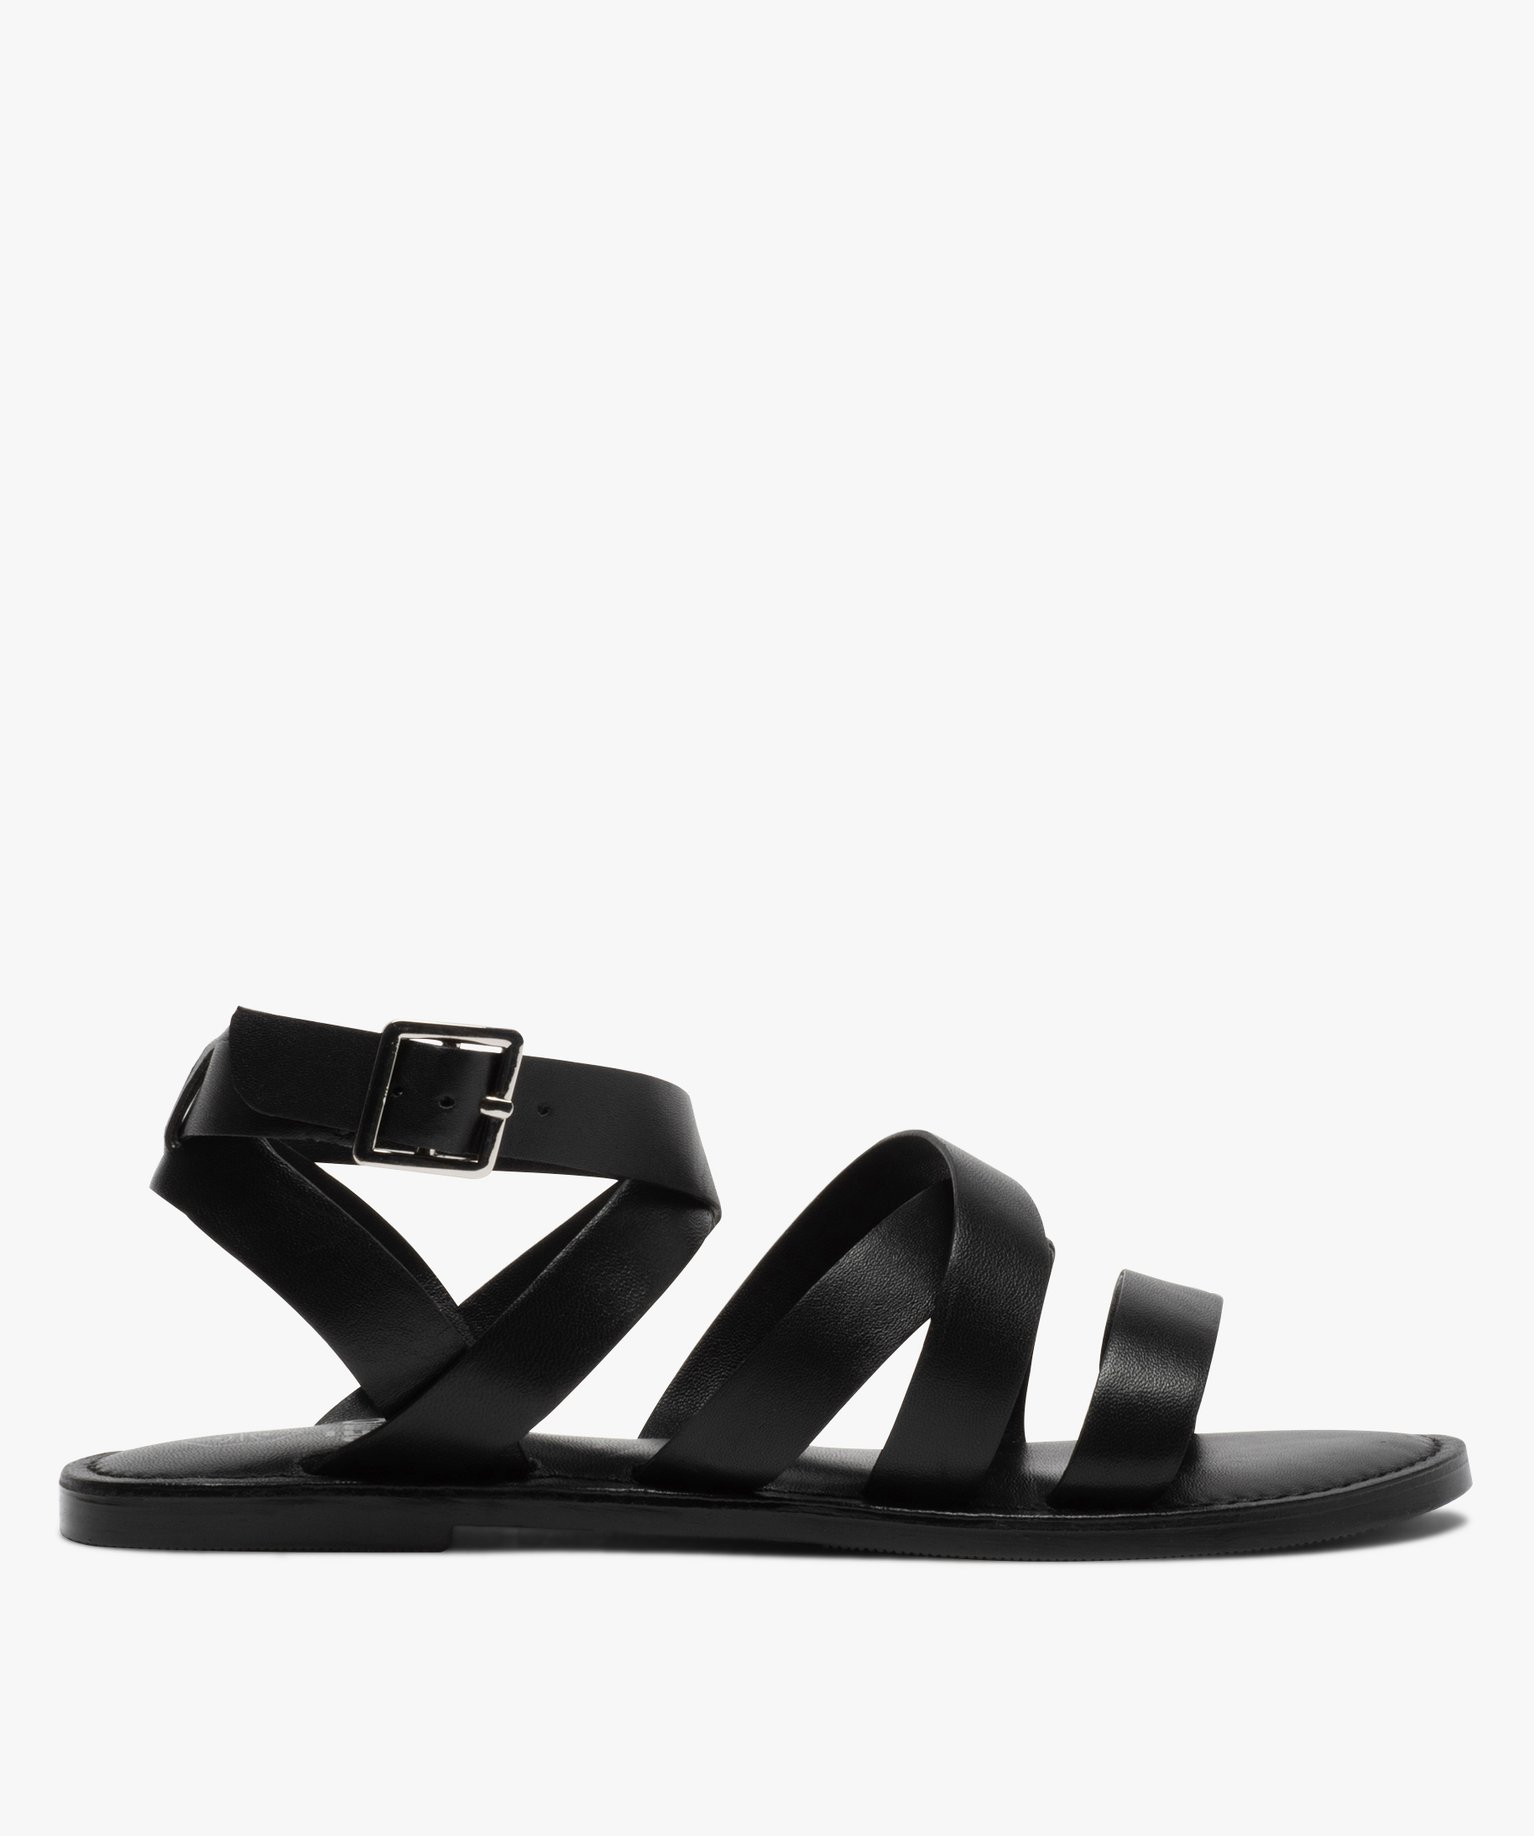 sandale plate femme en cuir noir Chaussures Chaussures femme Sandales Nu-pieds 